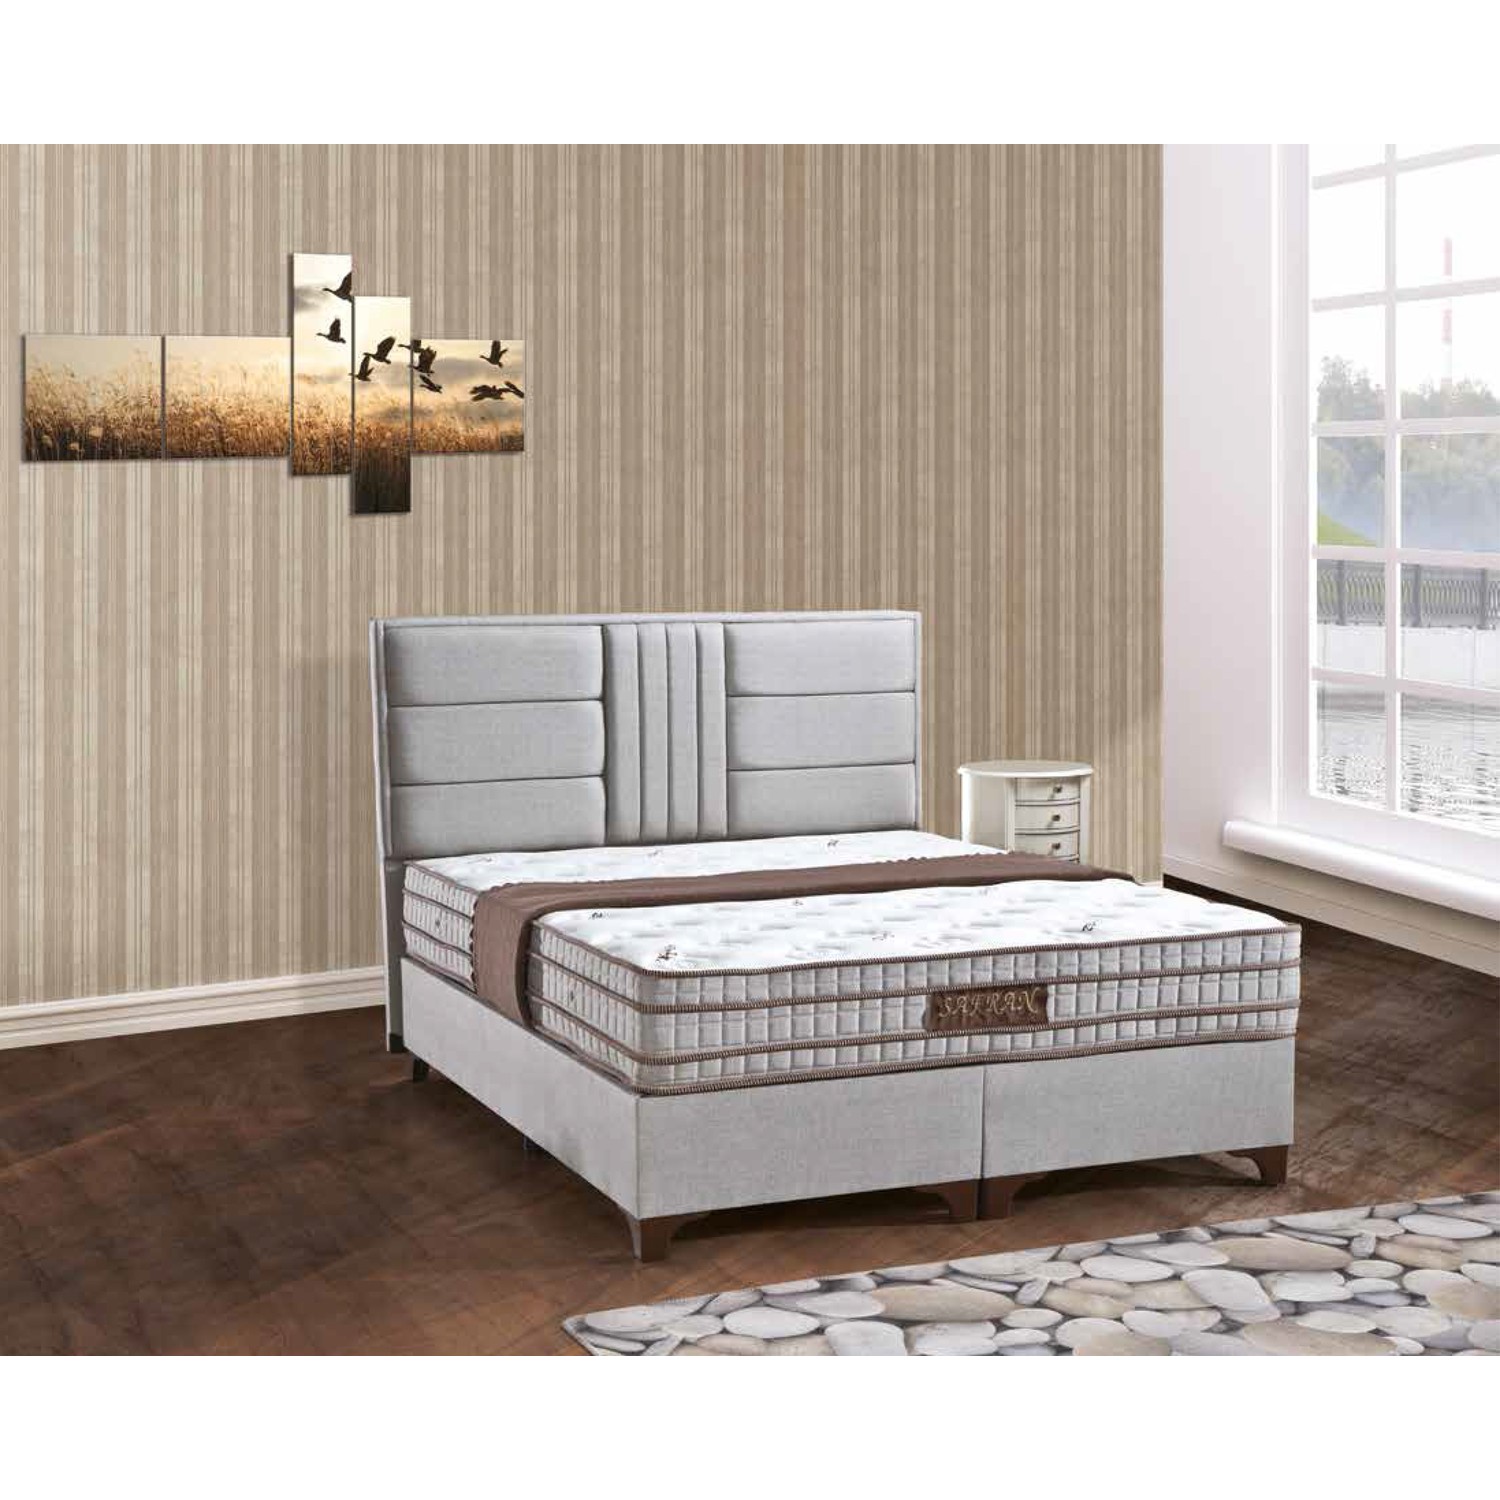 Sleep Comfort Safran Yatak Baza Başlık Set 90x190 Fiyatı